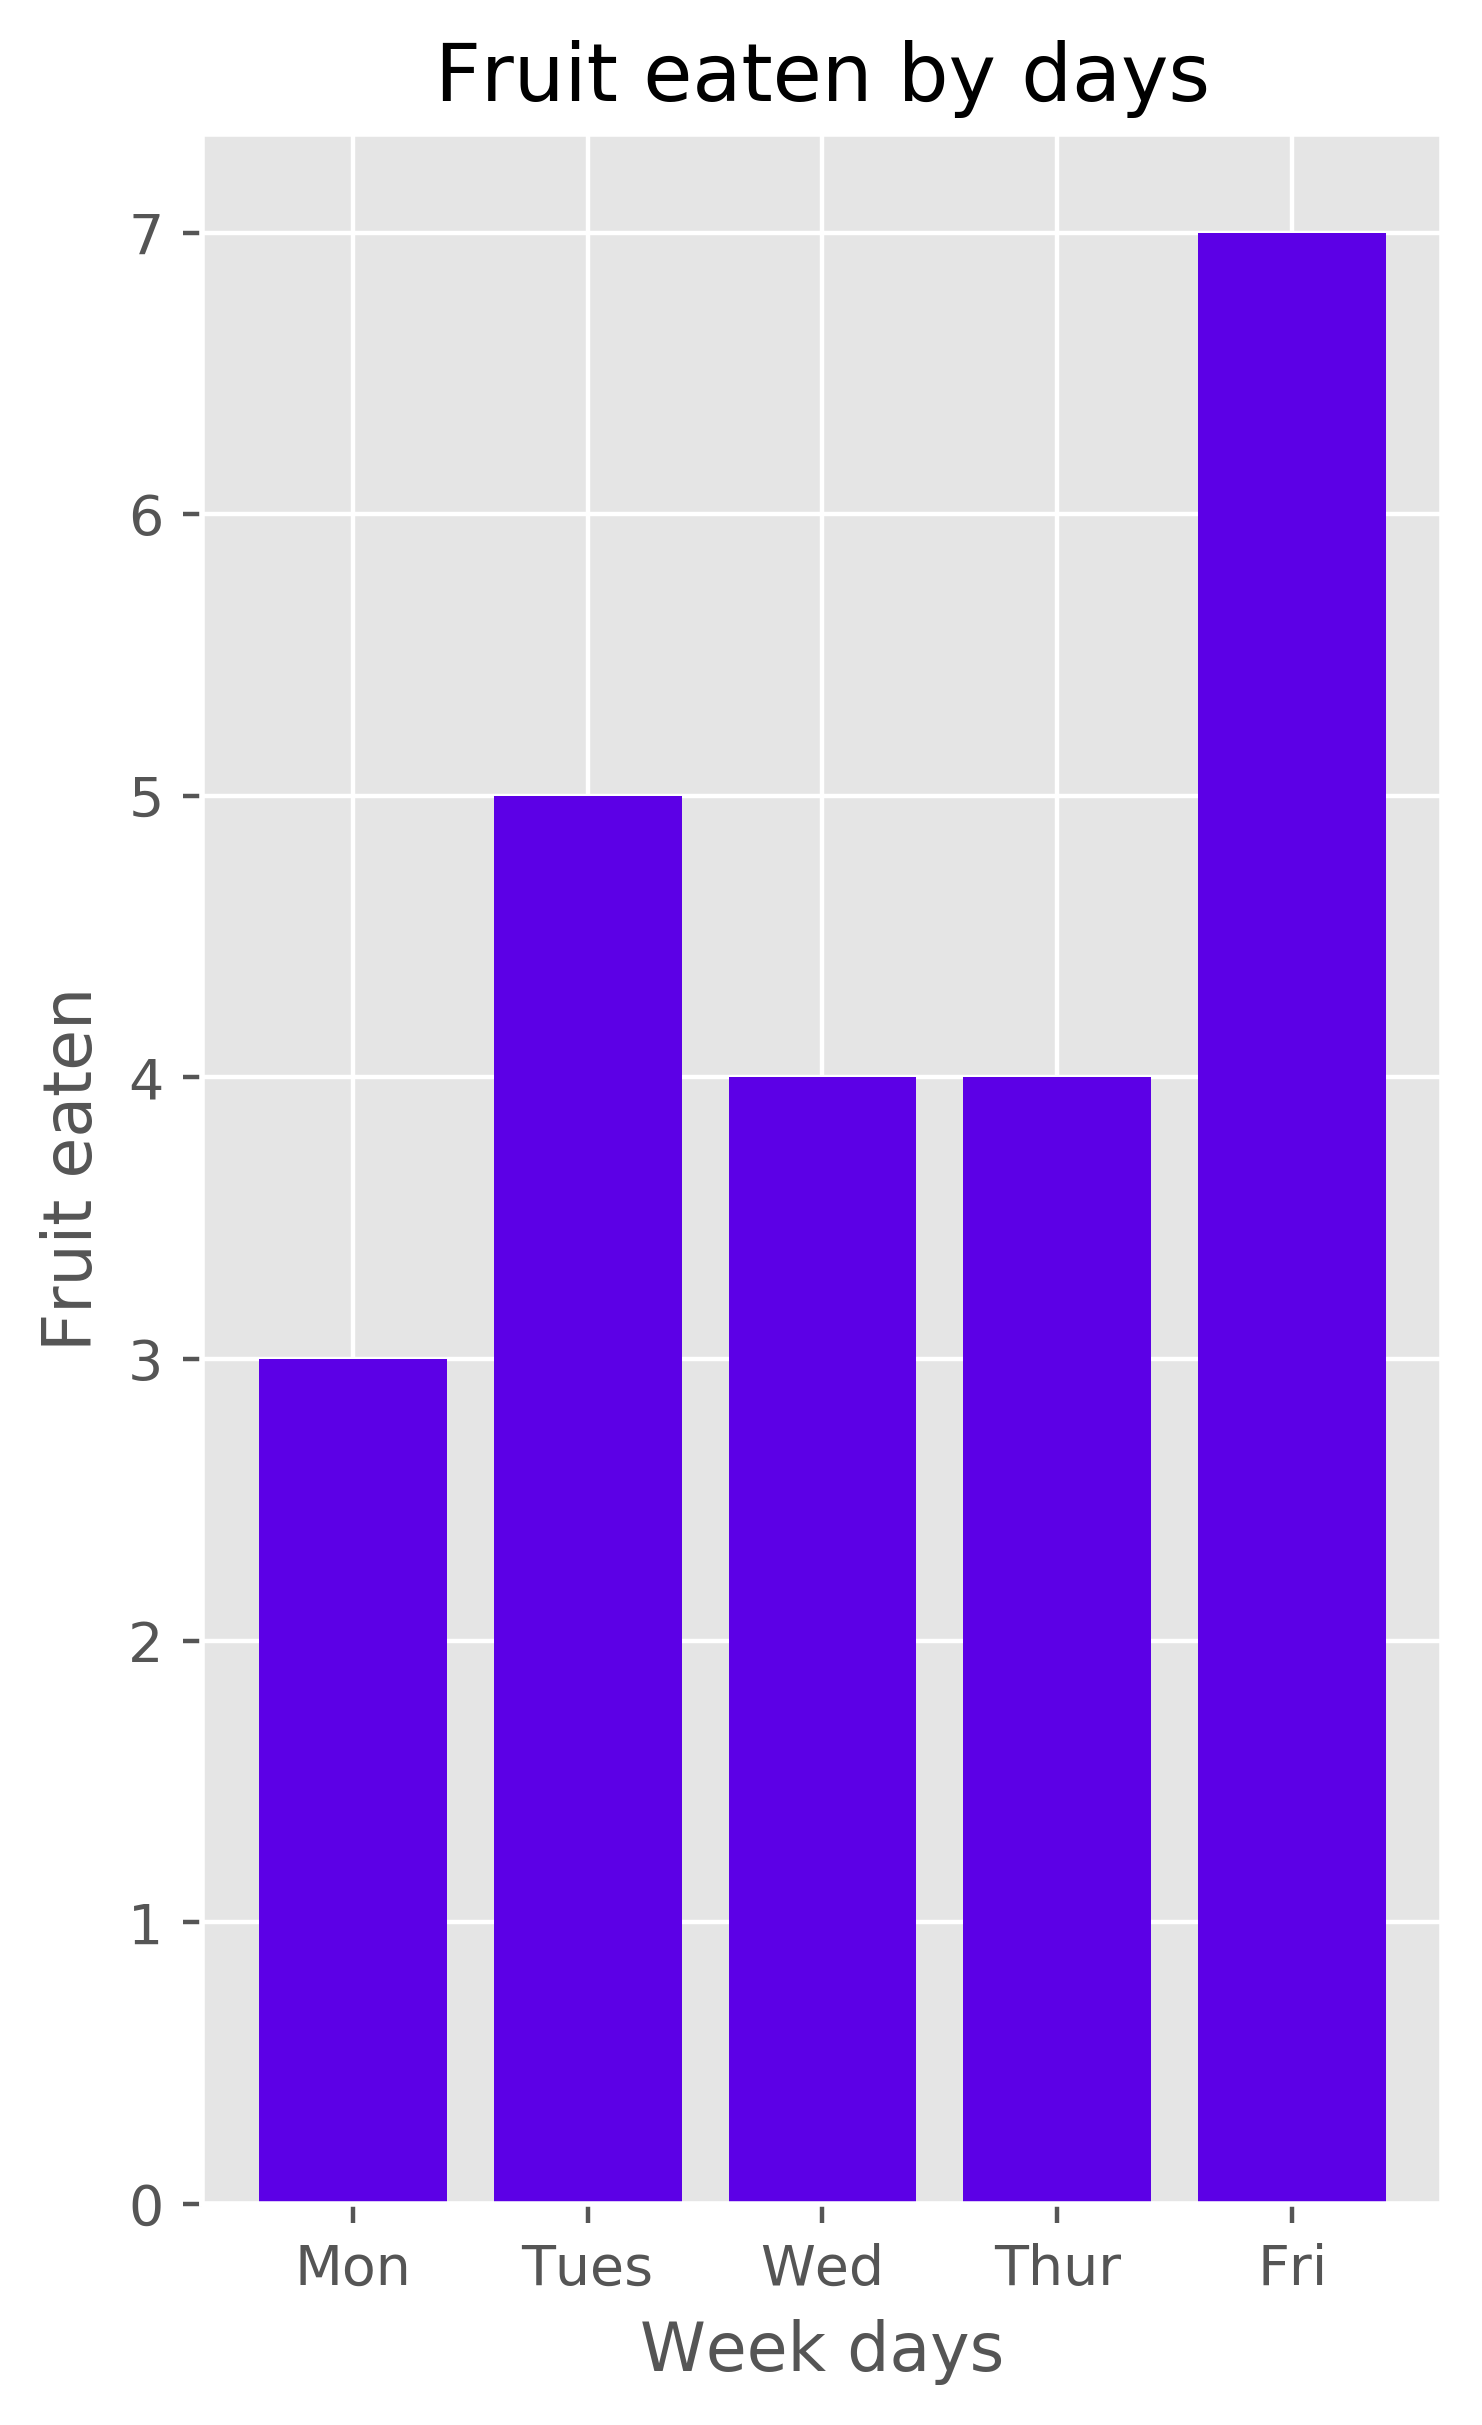 Pyplot bar chart created in Clojure